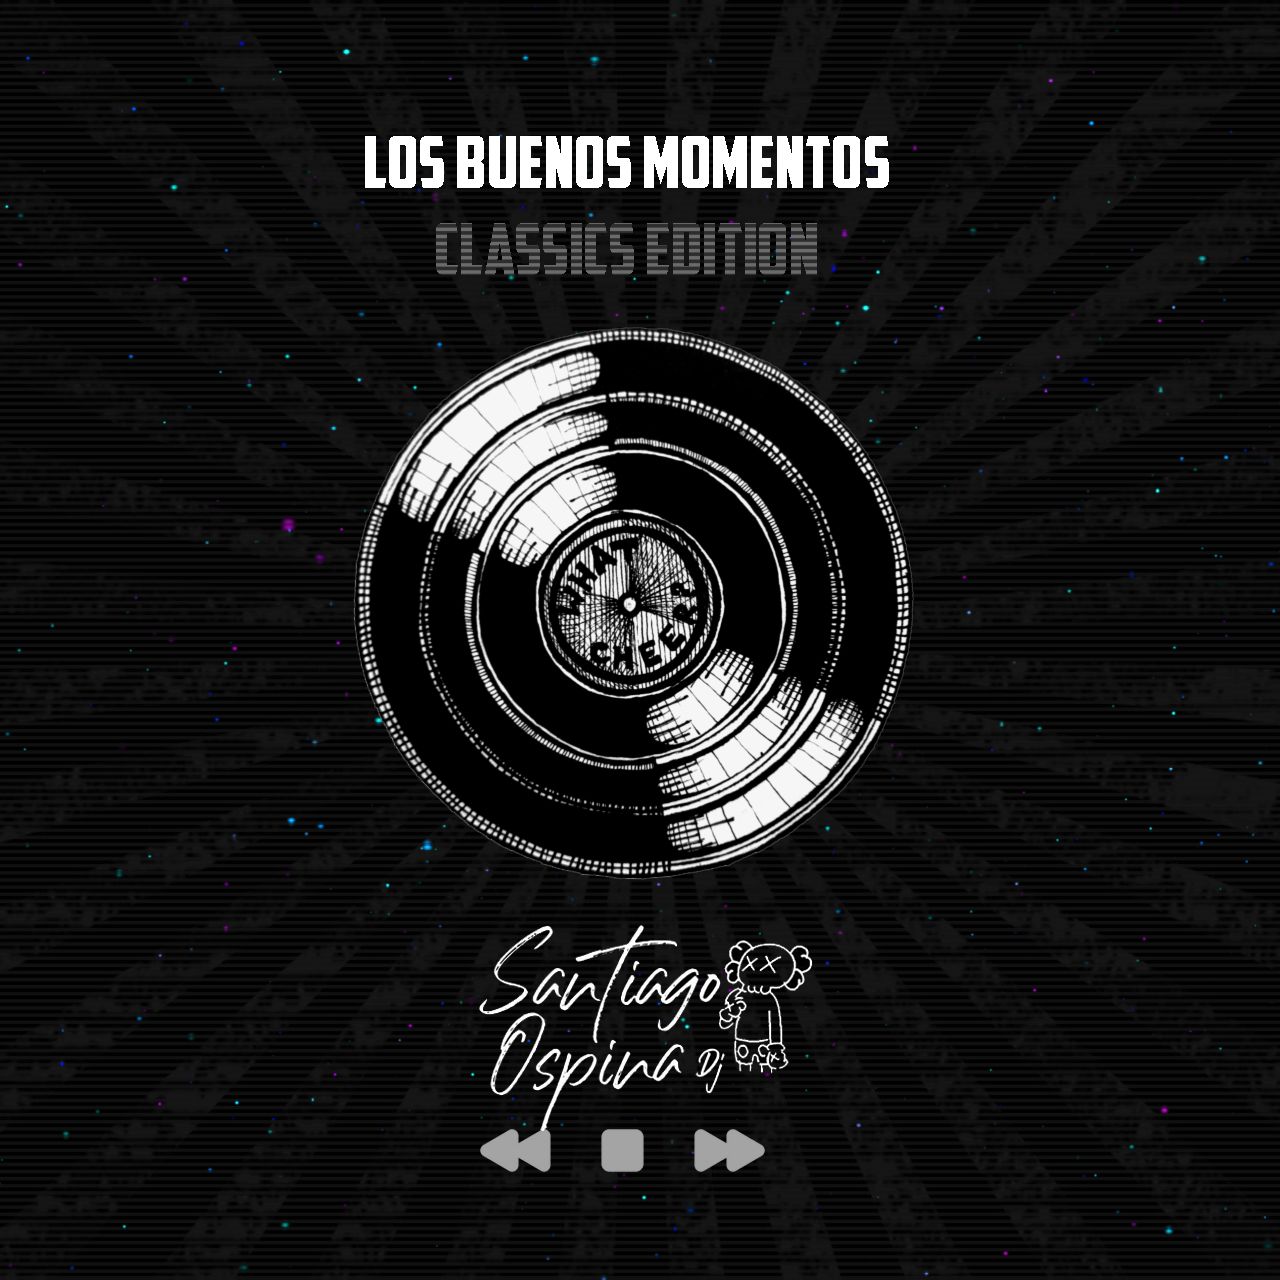 Ներբեռնե LOS BUENOS MOMENTOS - SANTIAGO OSPINA DJ